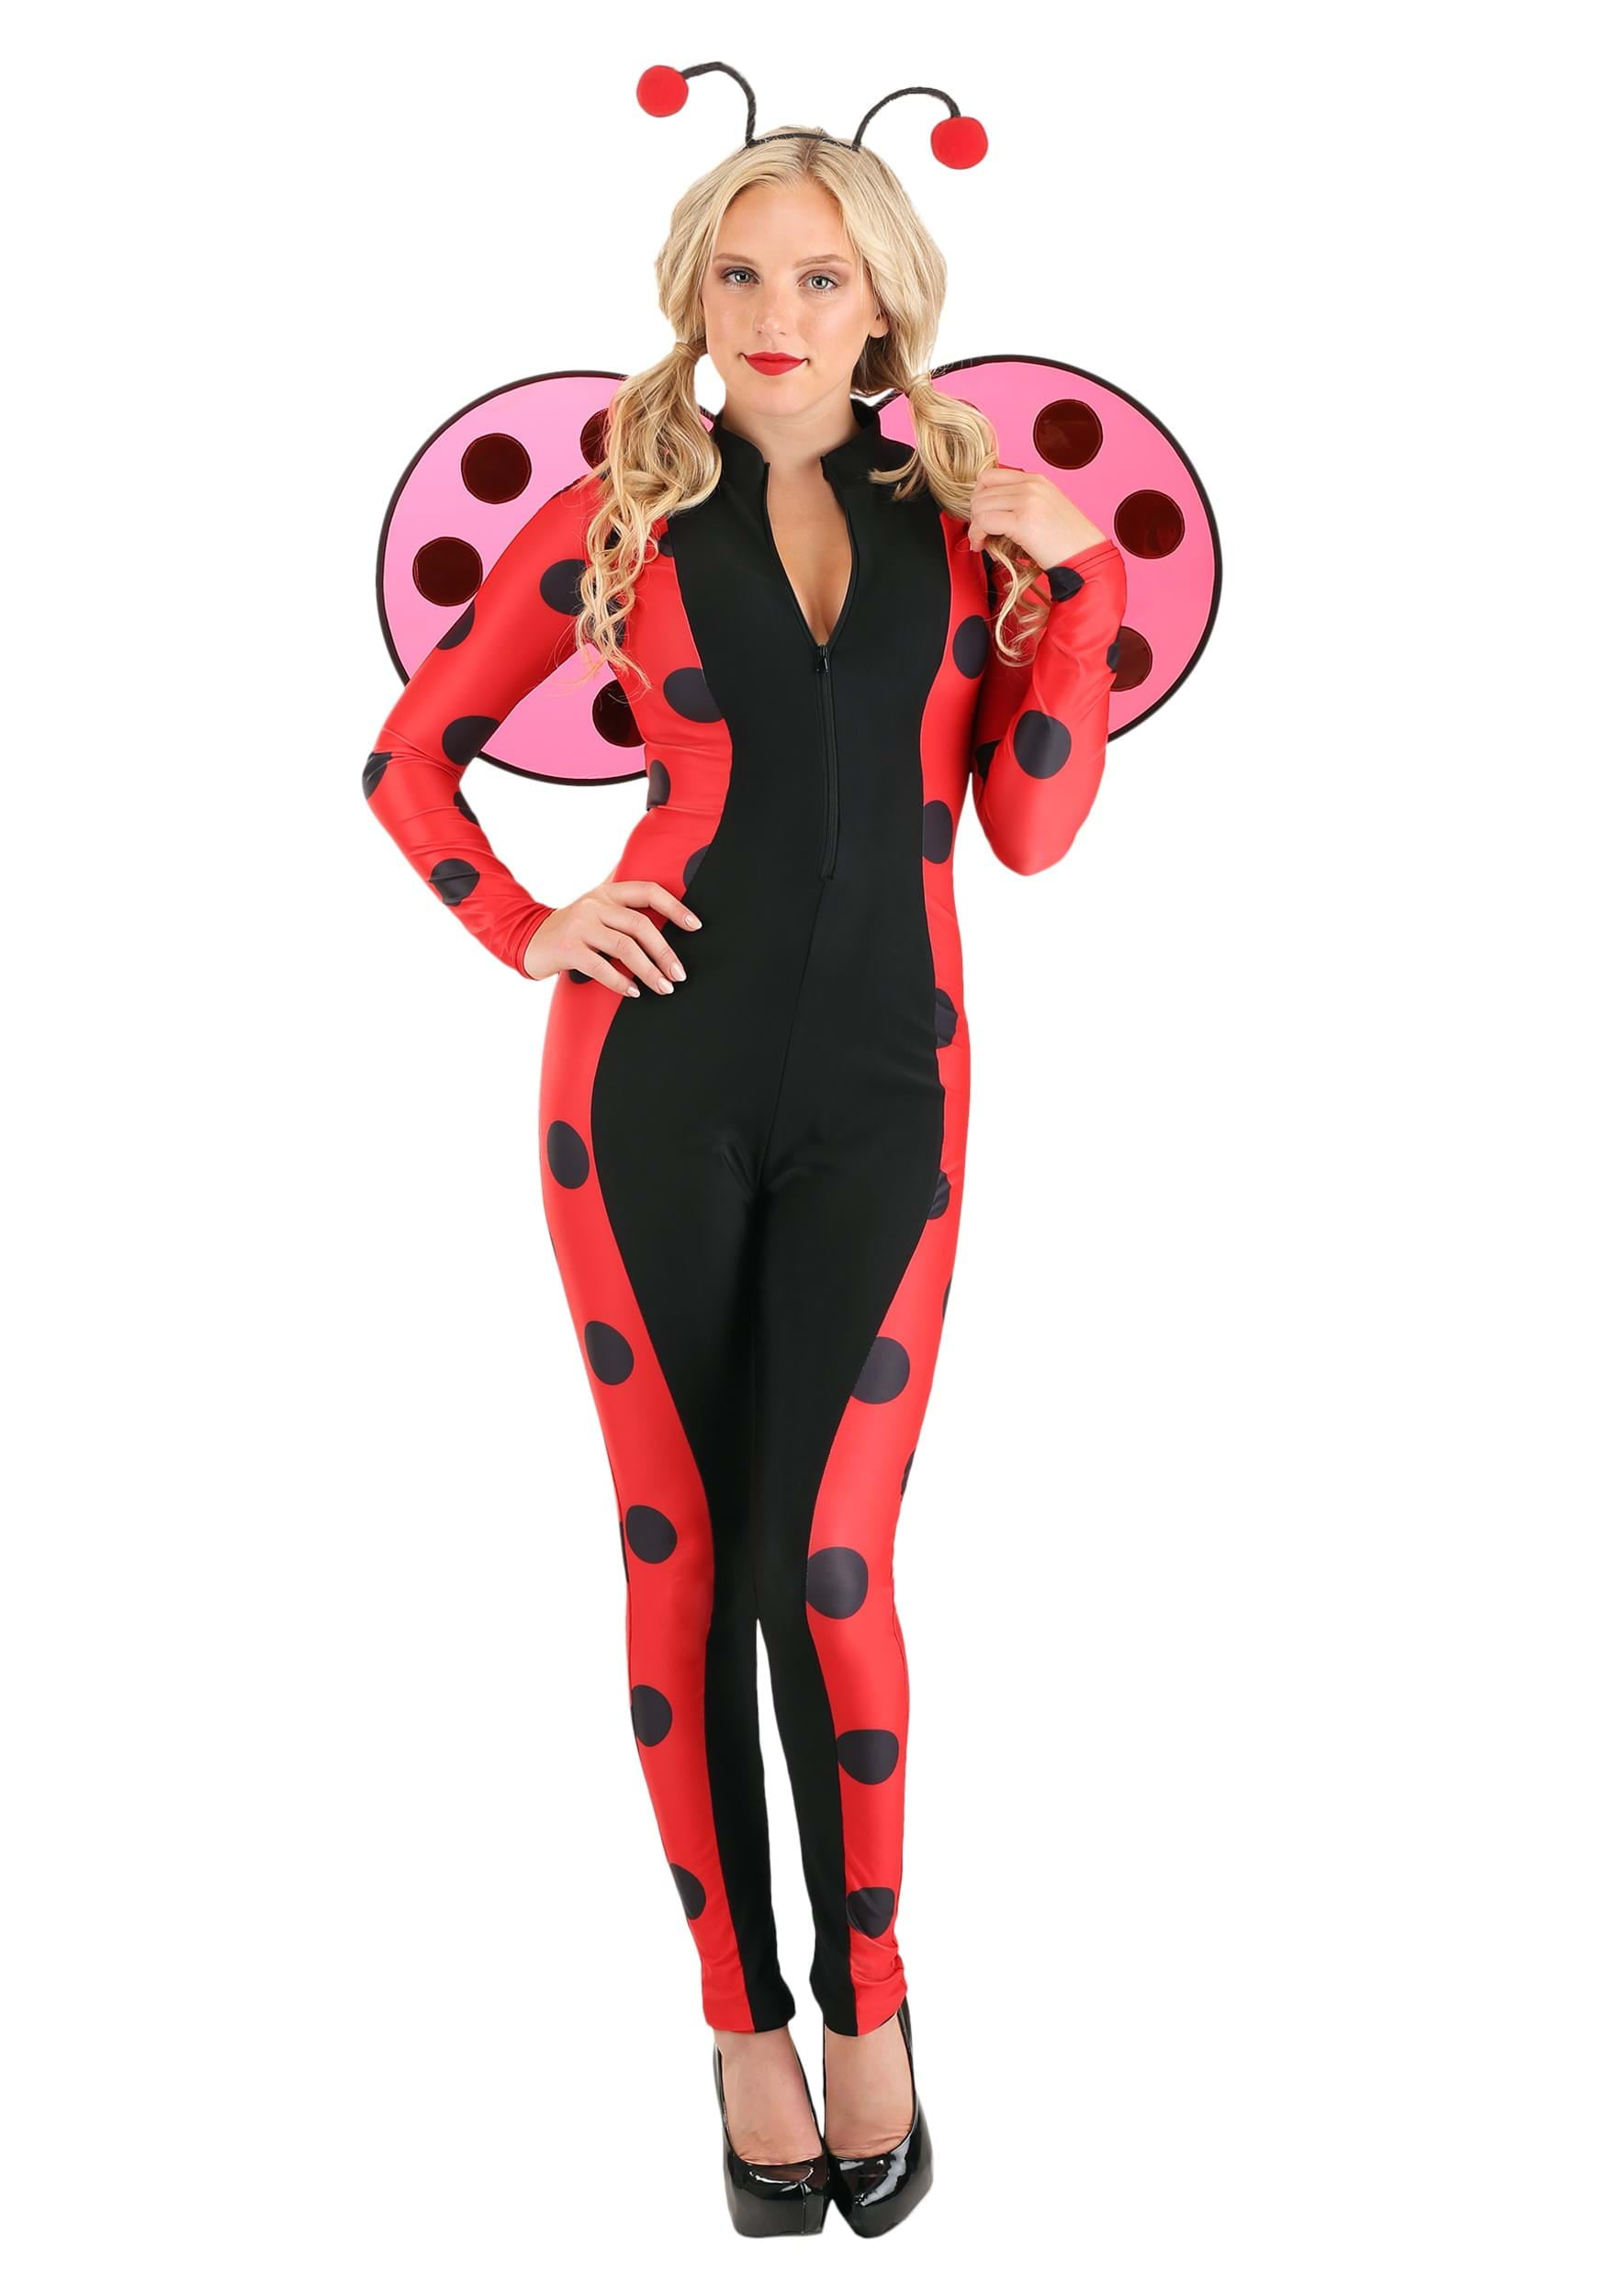 Luscious Ladybug Costume for Women 